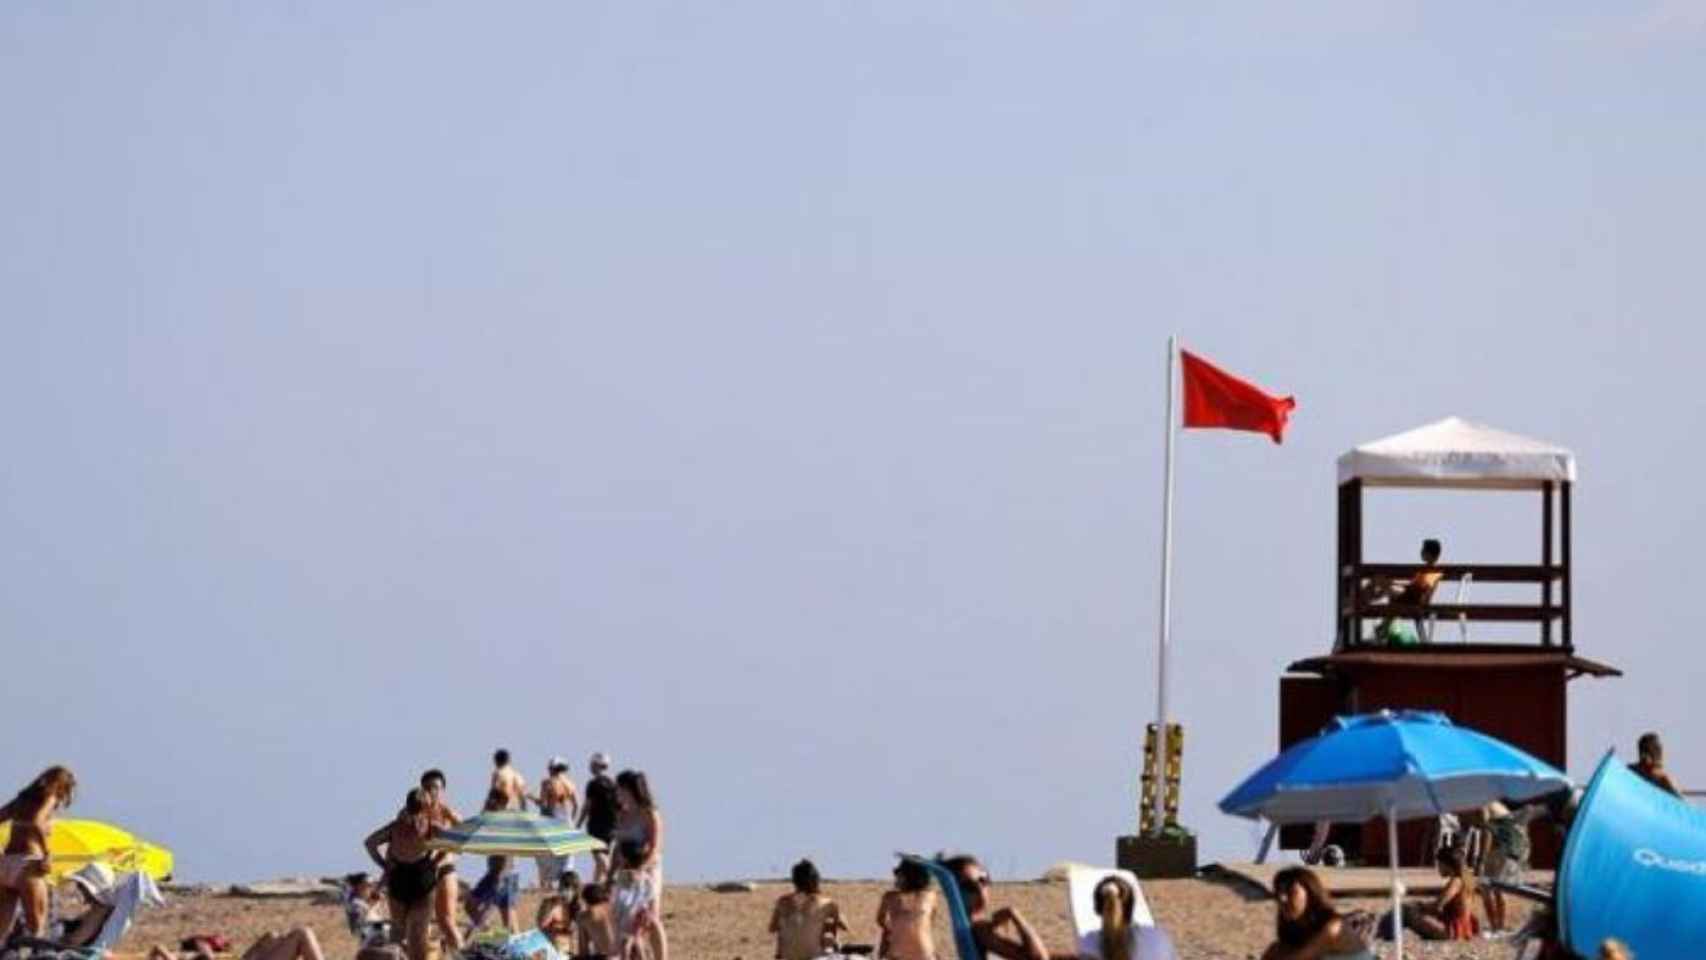 Bandera roja en una playa en una imagen de archivo / EFE